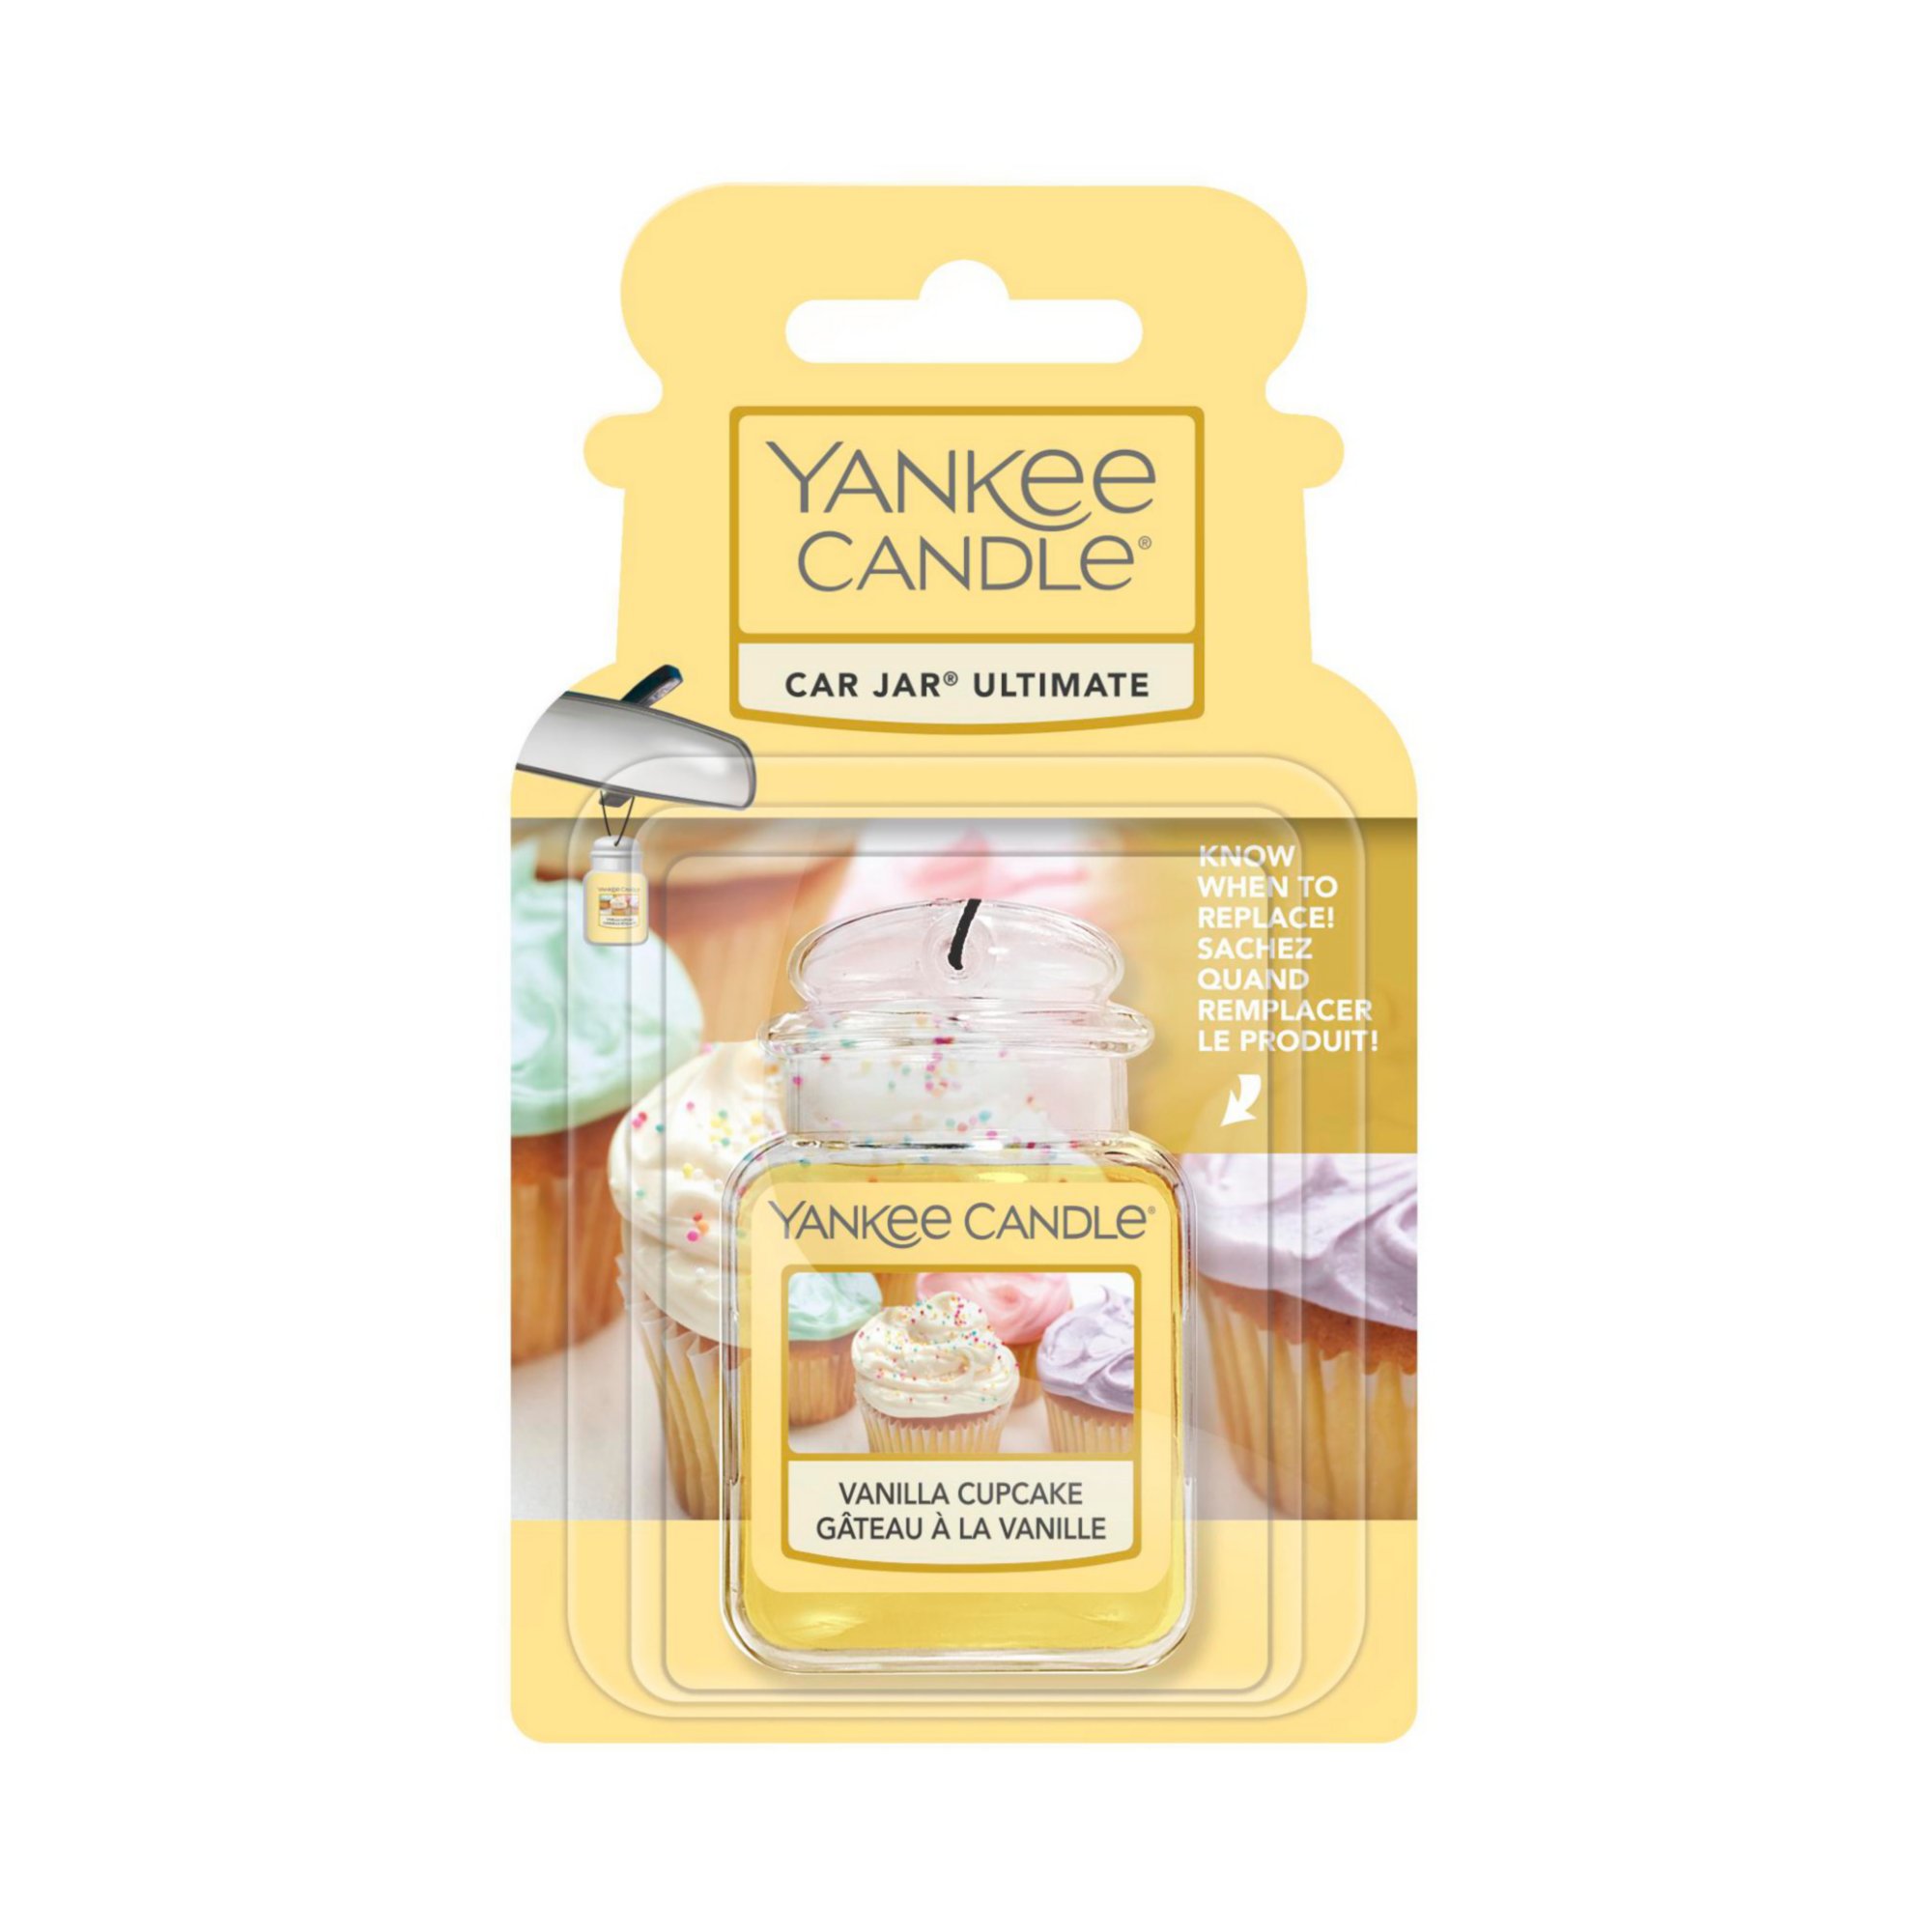 Yankee Candle Car Jar Ultimate Vanilla Cupcake Air Freshener, 1 ct